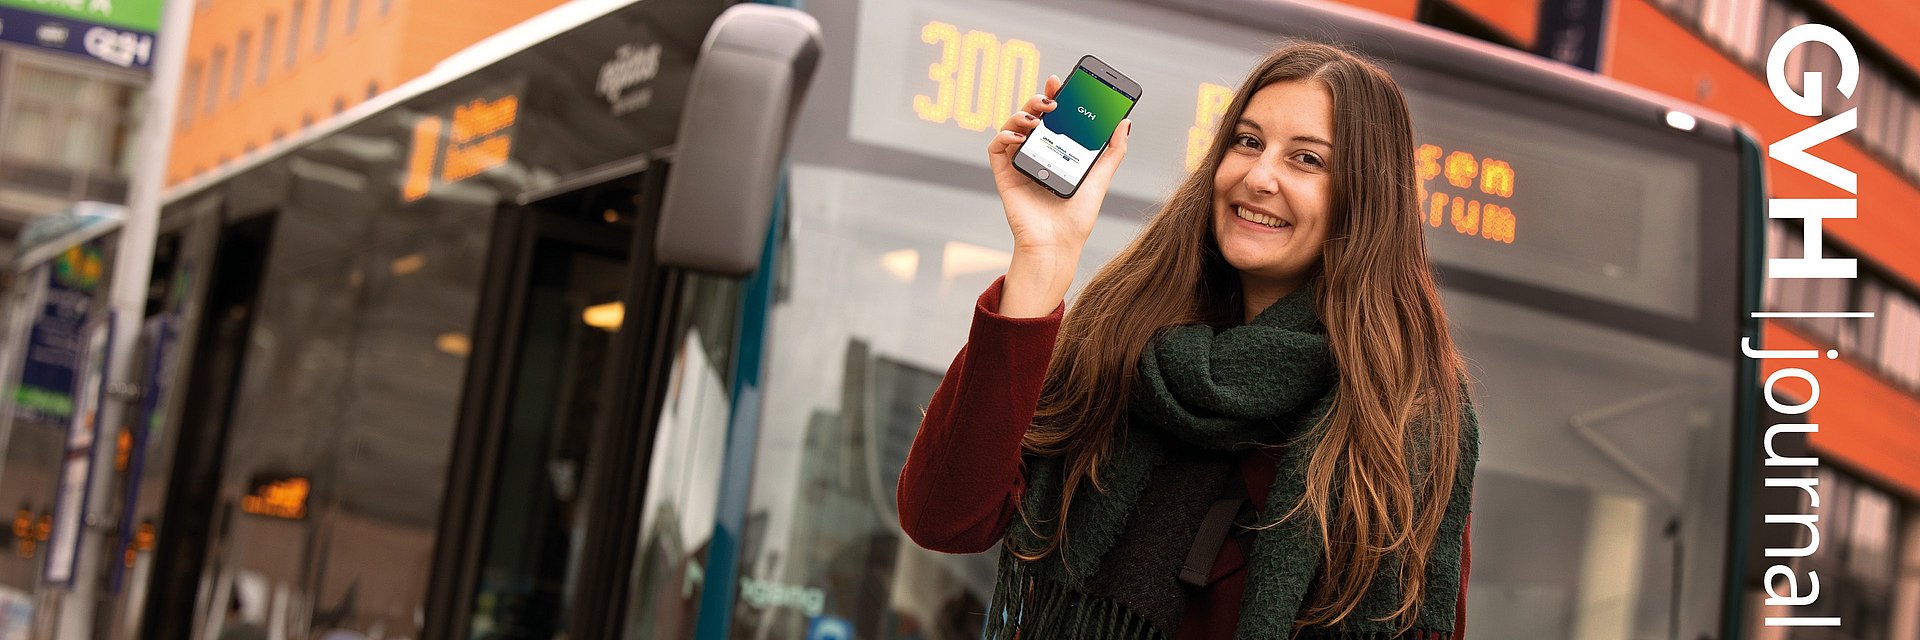 Titel des GVHjournals 4.2021: Eine Frau steht einem Handy in der Hand vor einem Bus